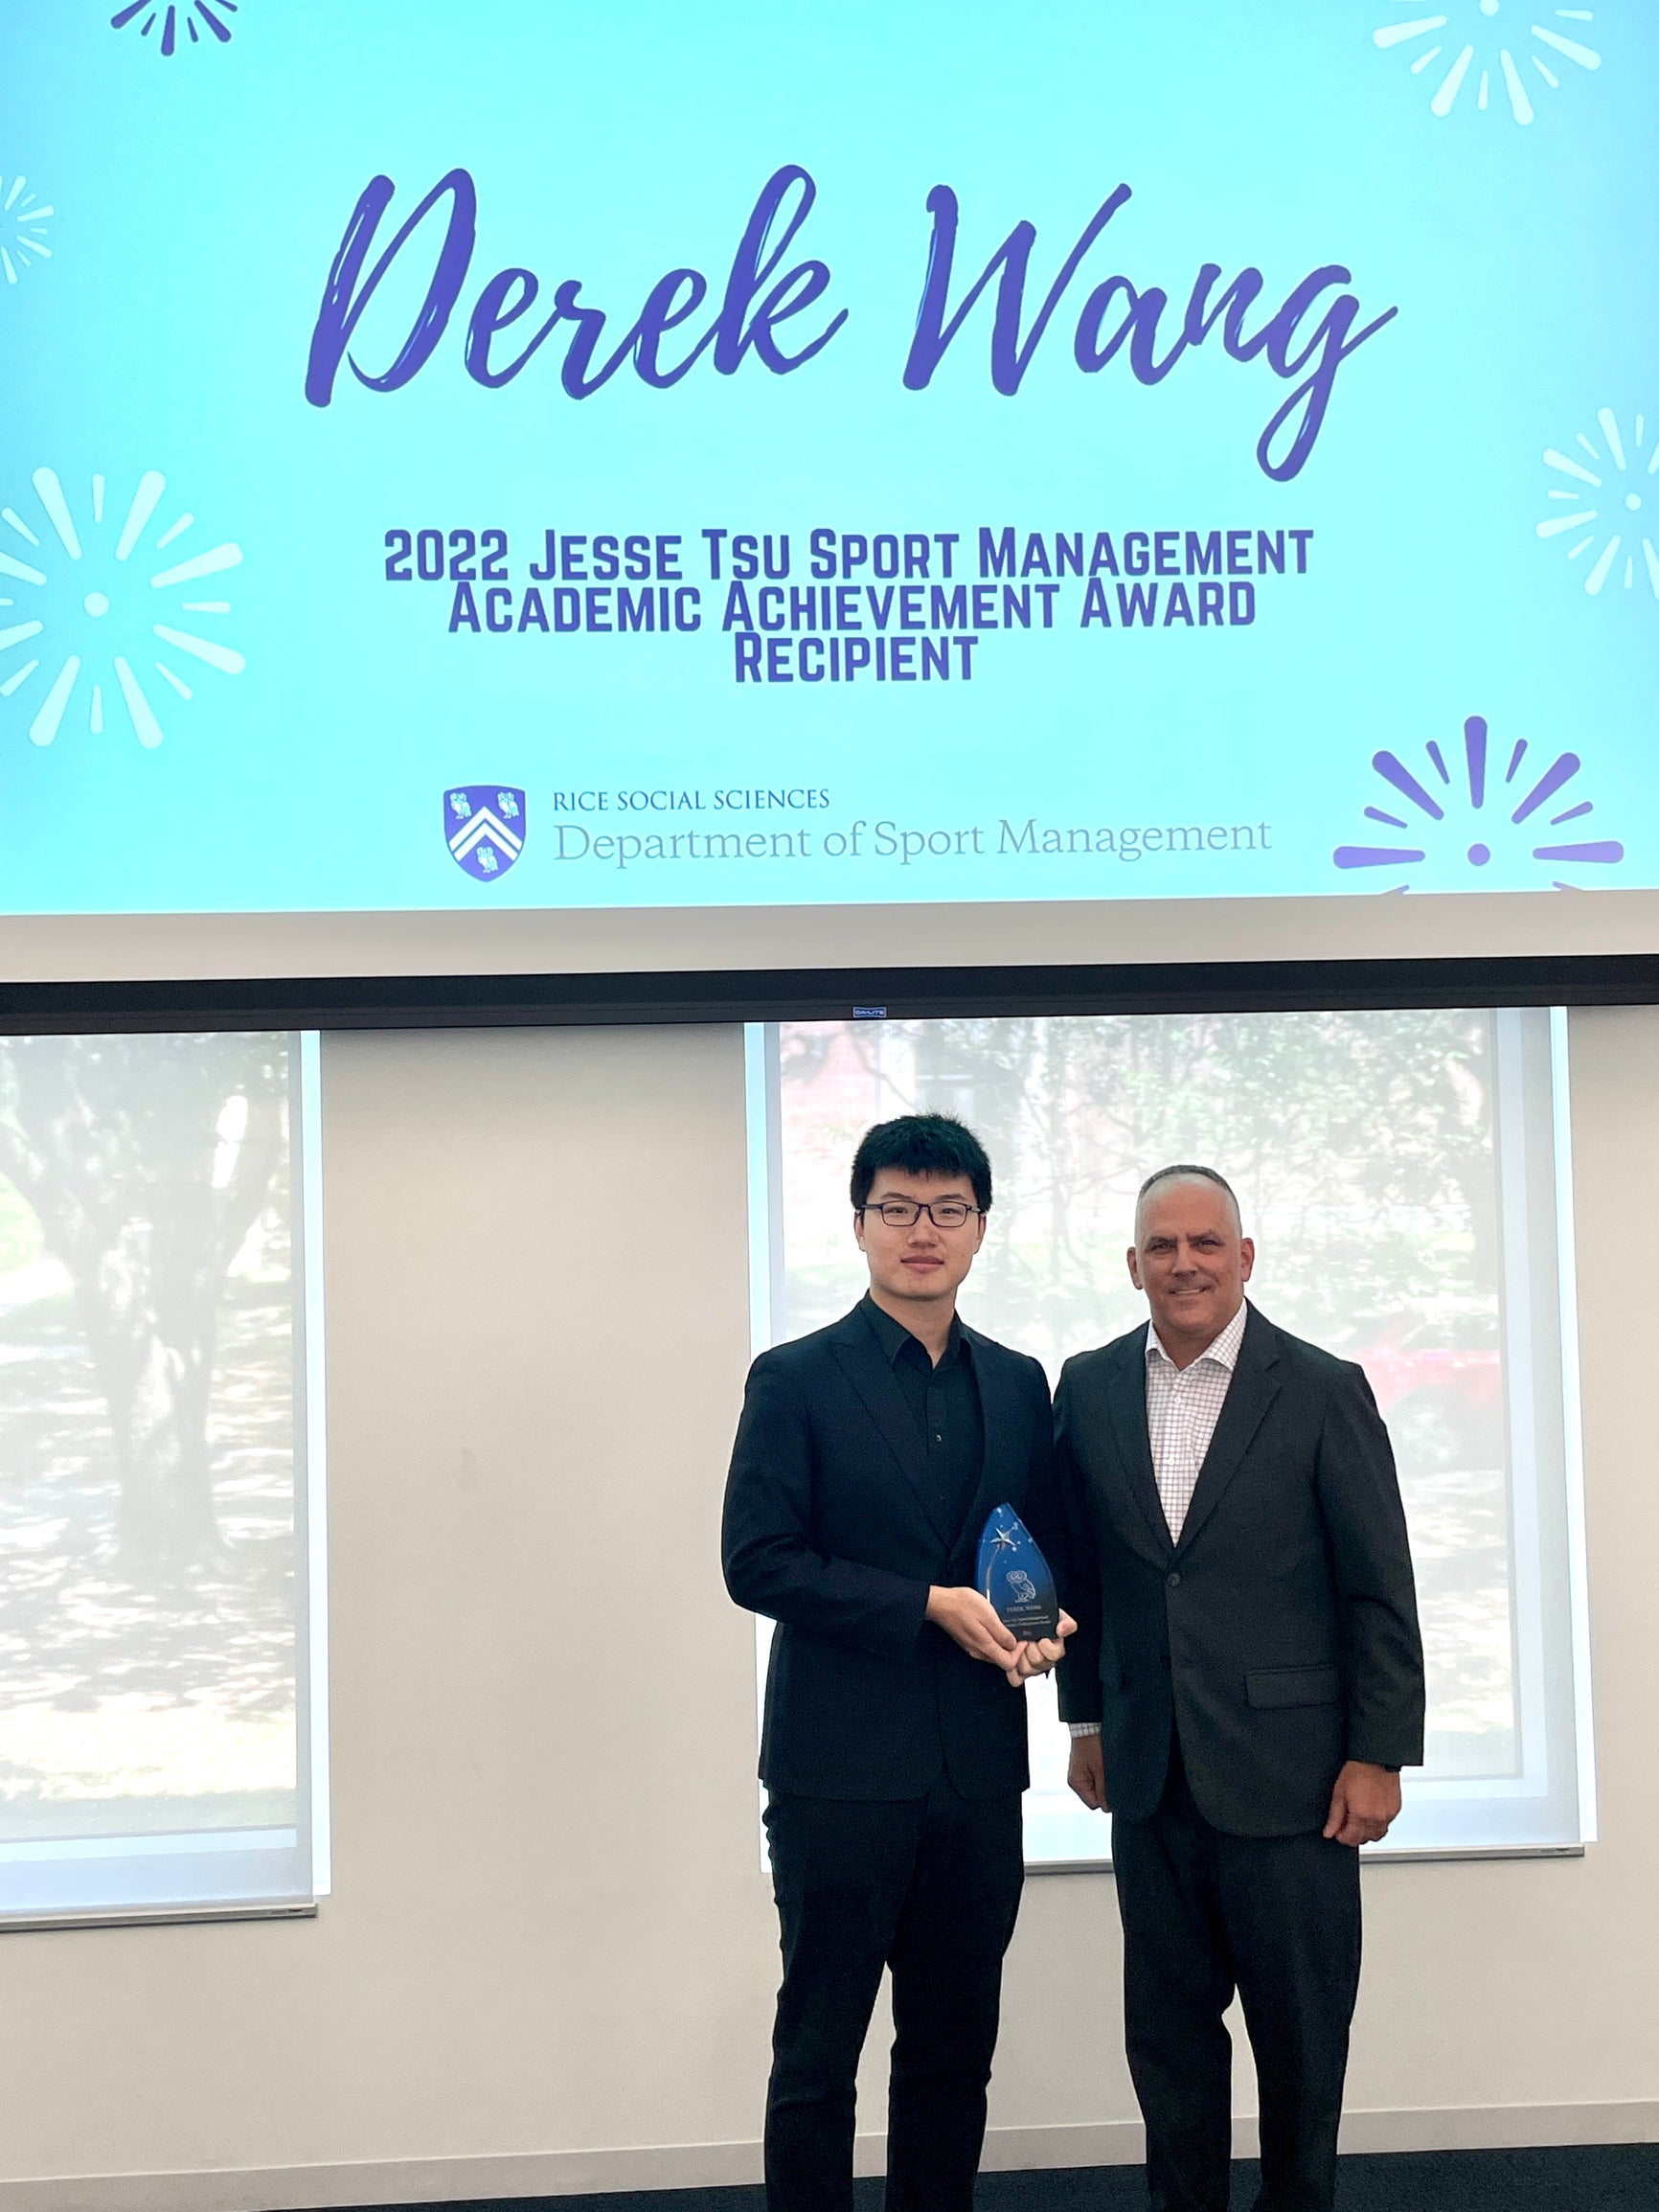 Derek Wang '22 Jesse Tsu Award Recipient